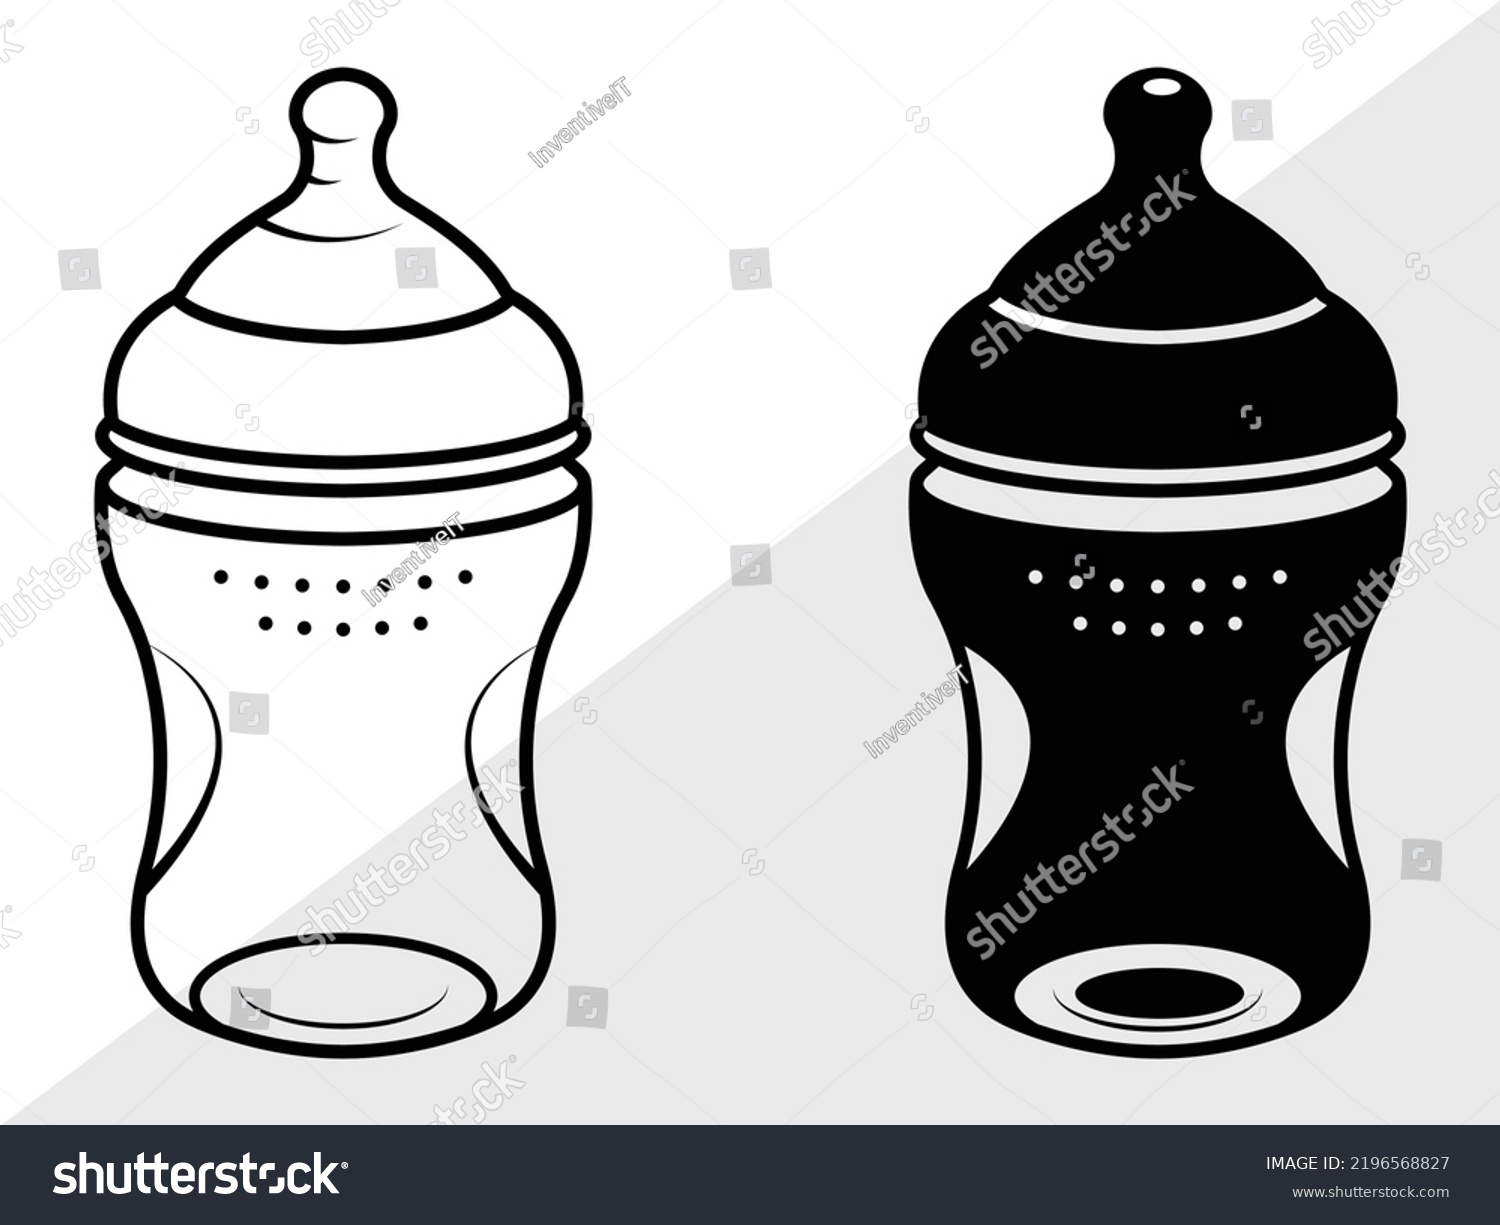 SVG of Baby Bottle SVG Printable Vector Illustration svg